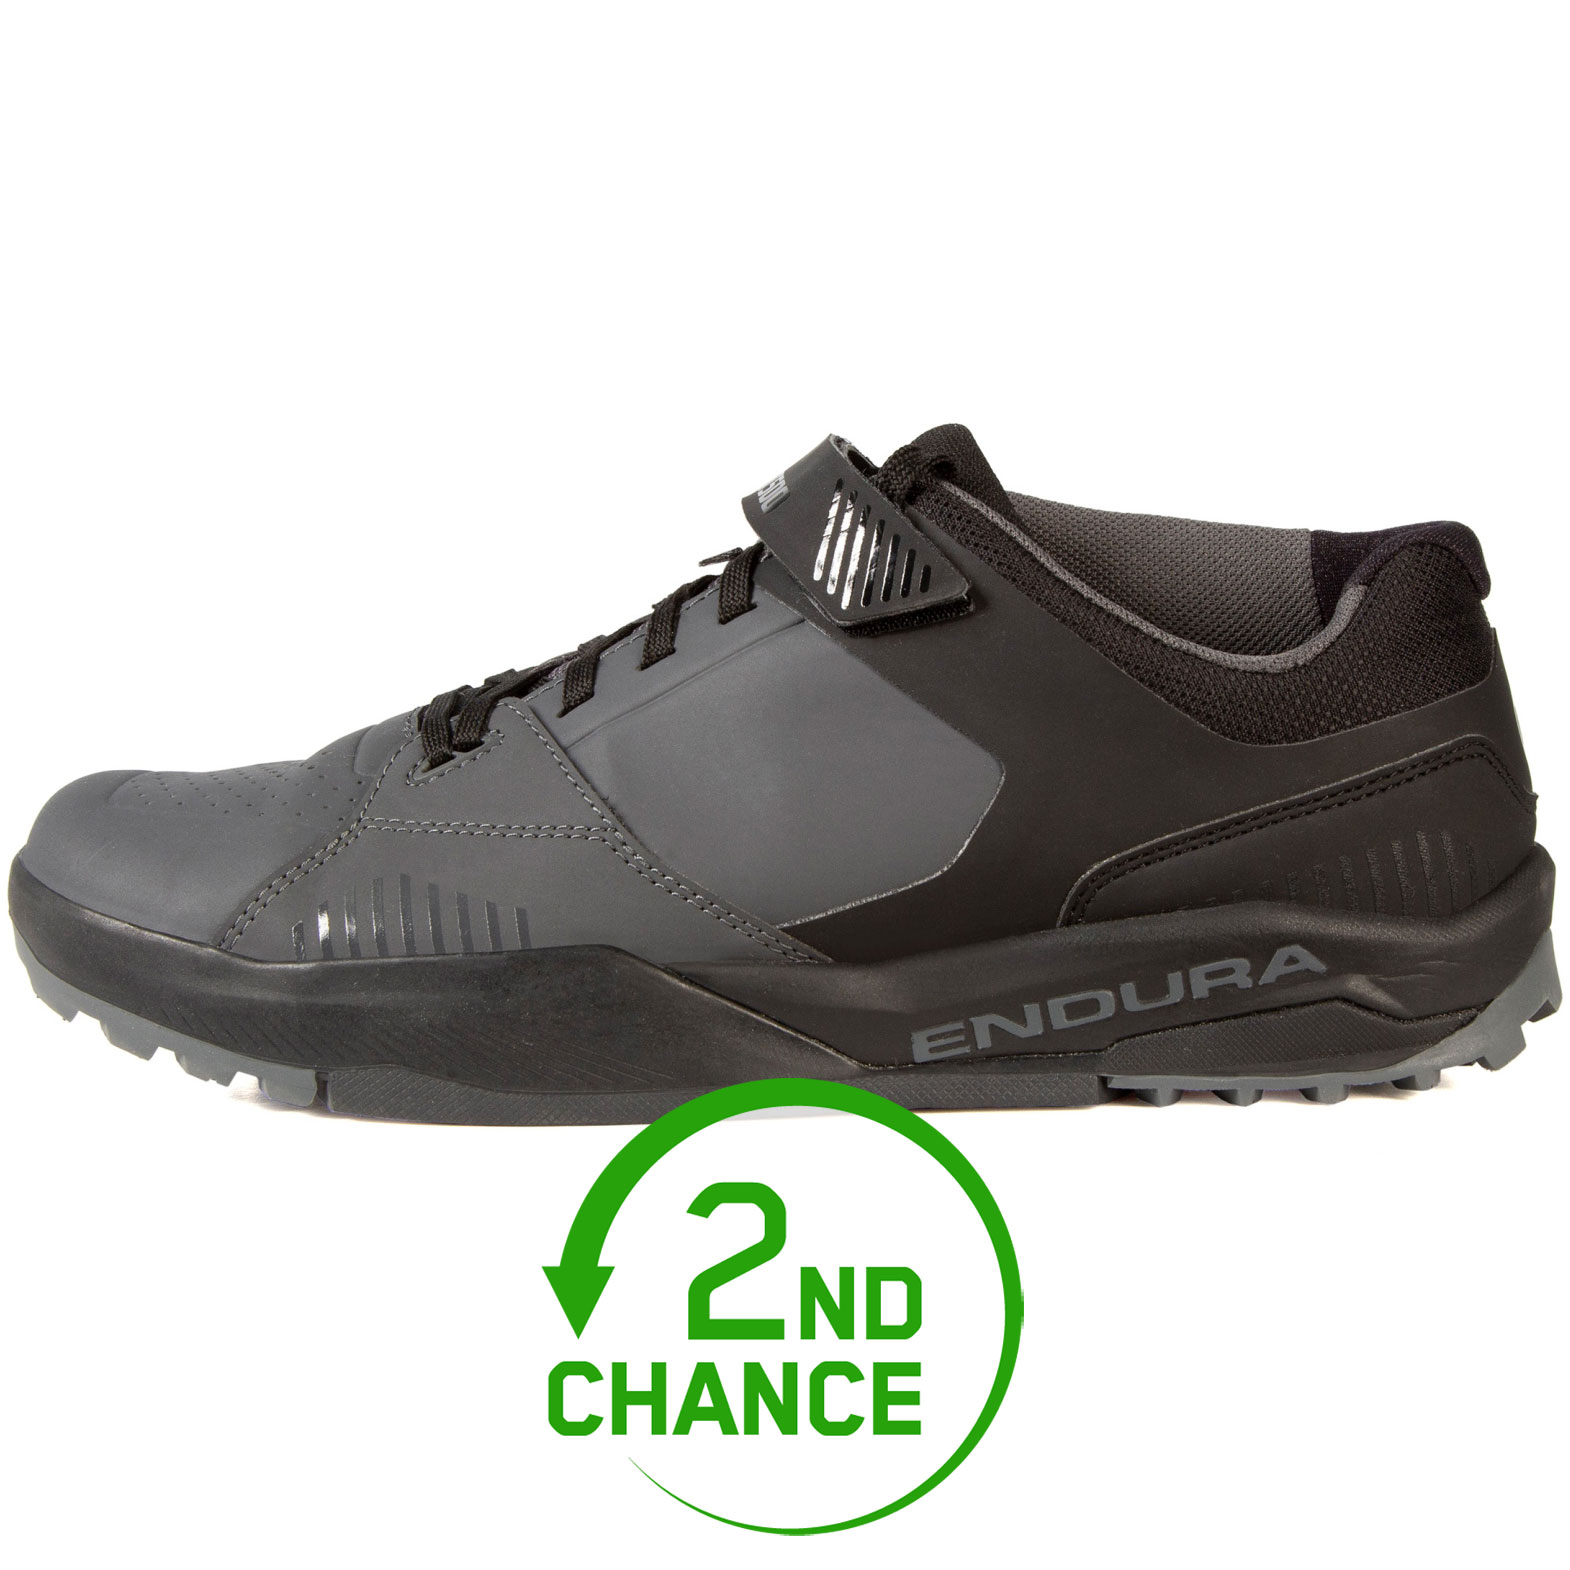 Produktbild von Endura MT500 Burner Flat Schuhe - schwarz - B-Ware